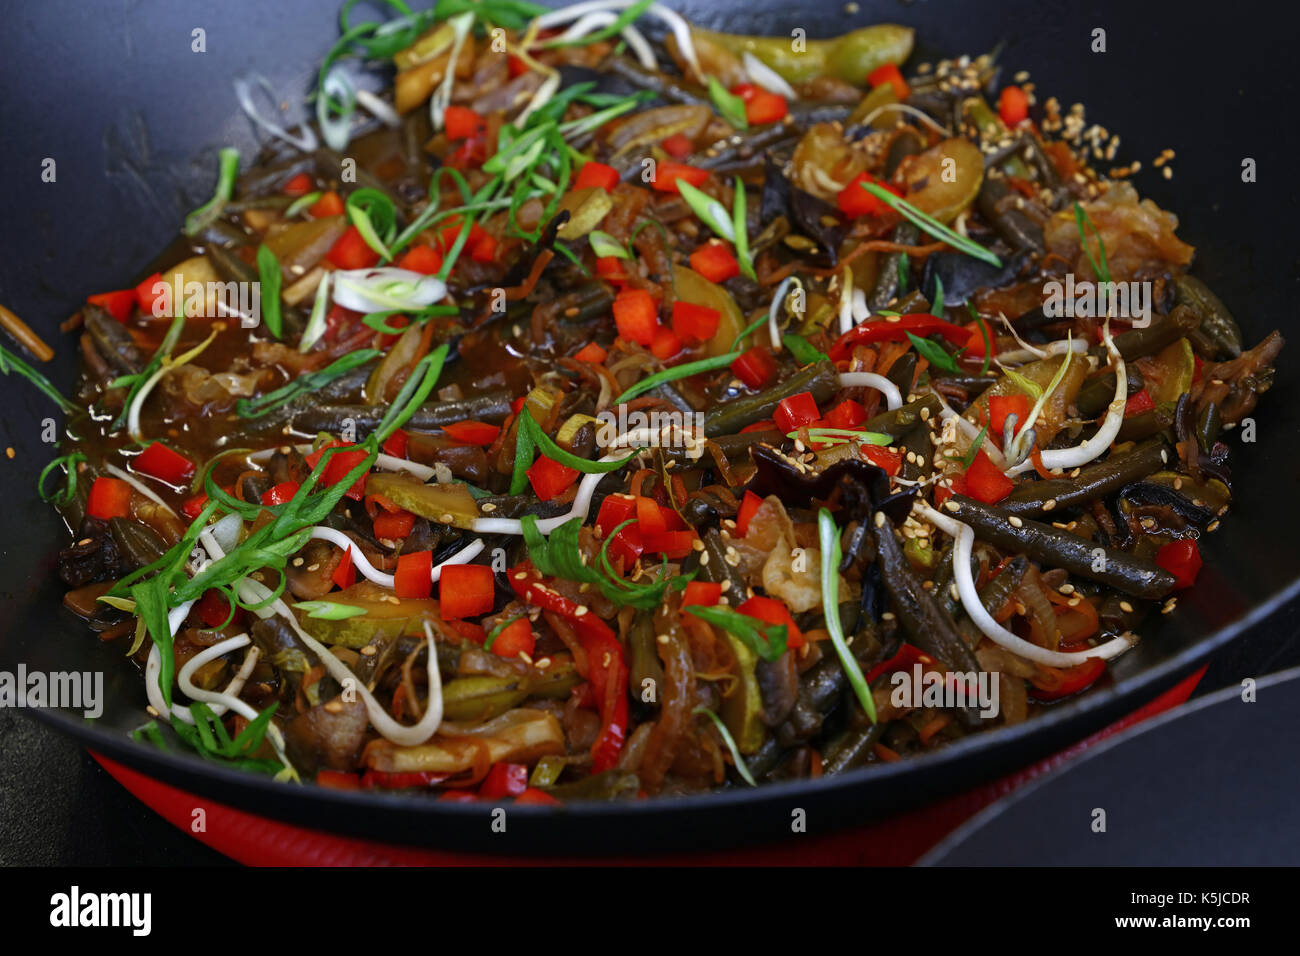 Repas traditionnel asiatique de légumes sautées au wok pan, Close up, high angle view Banque D'Images